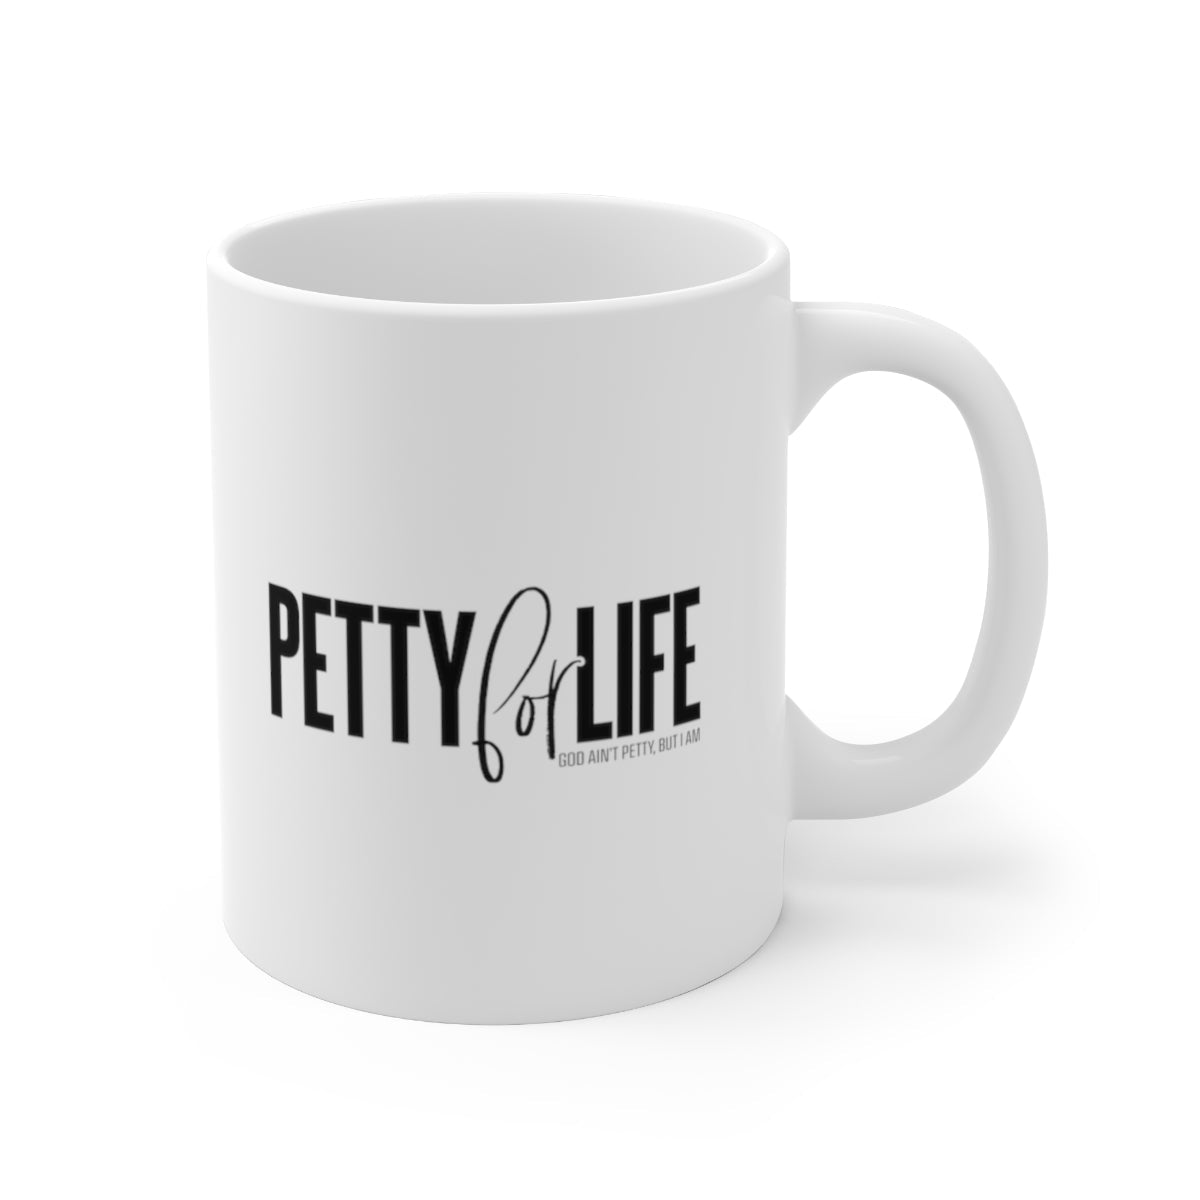 Petty for Life Mug 11oz (White/Black)-Mug-The Original God Ain't Petty But I Am